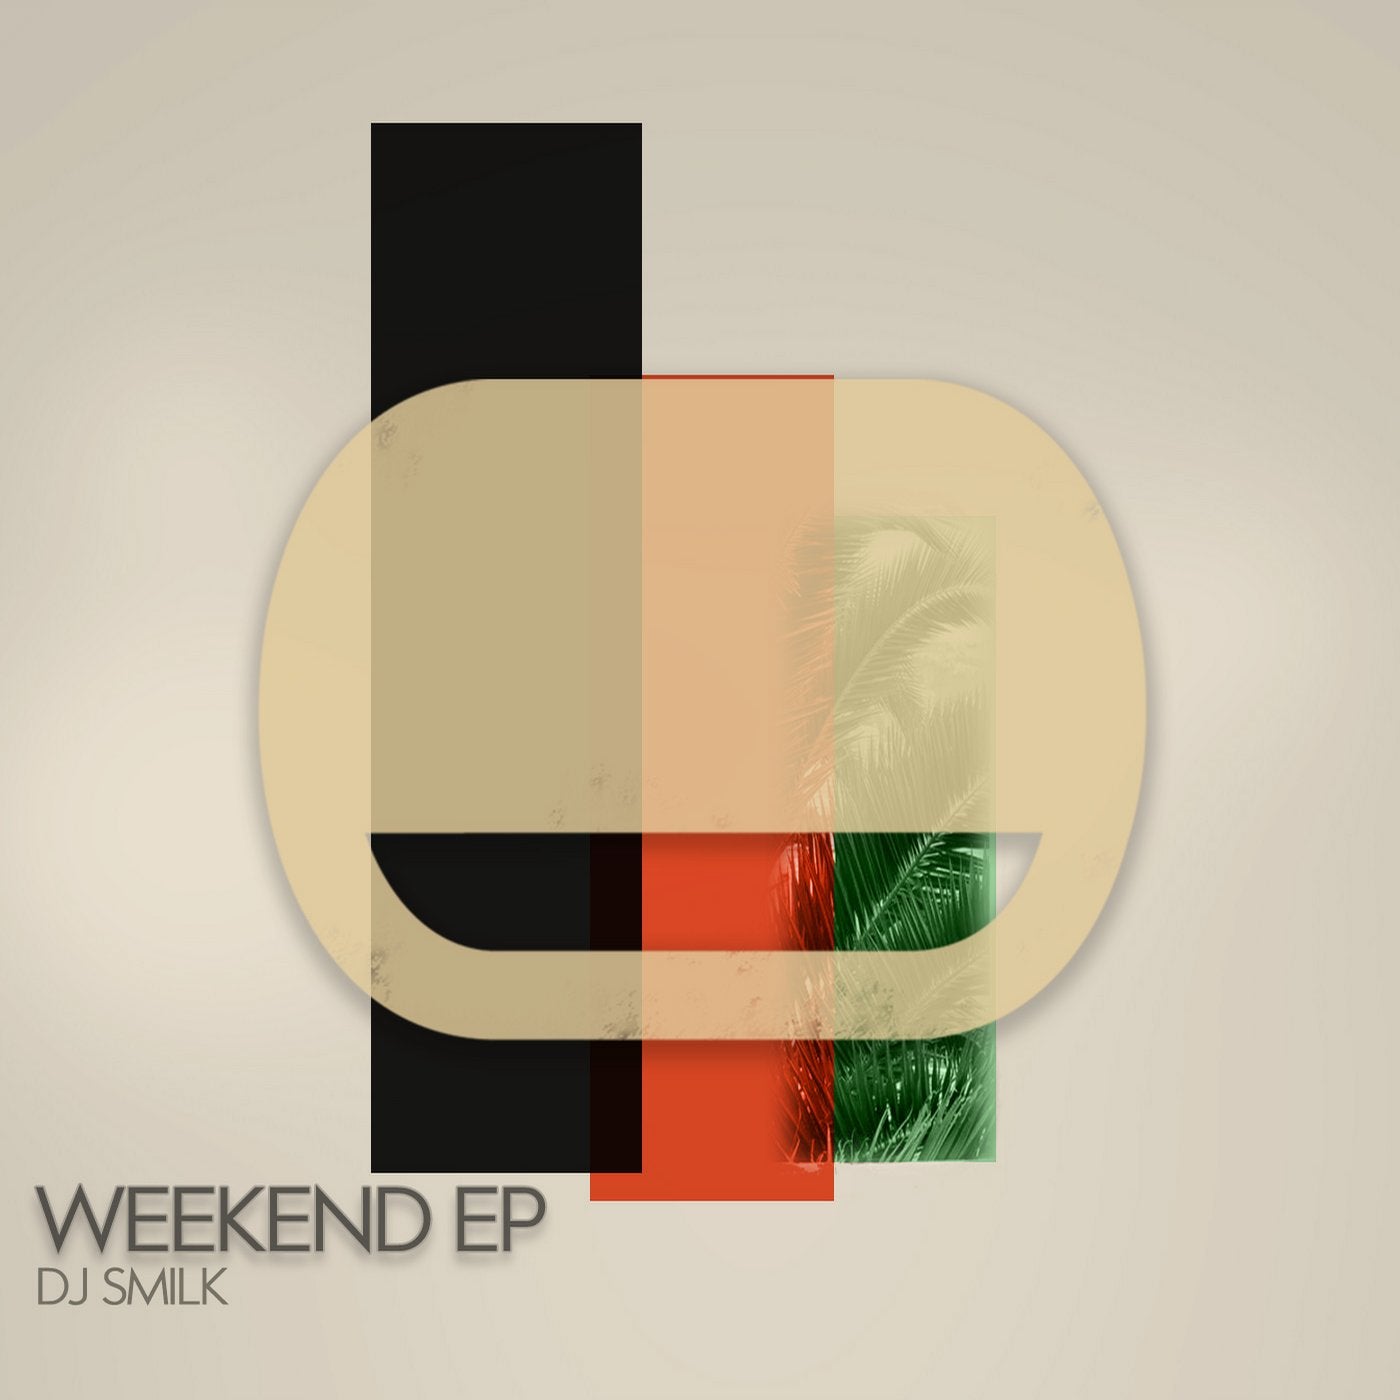 Weekend EP